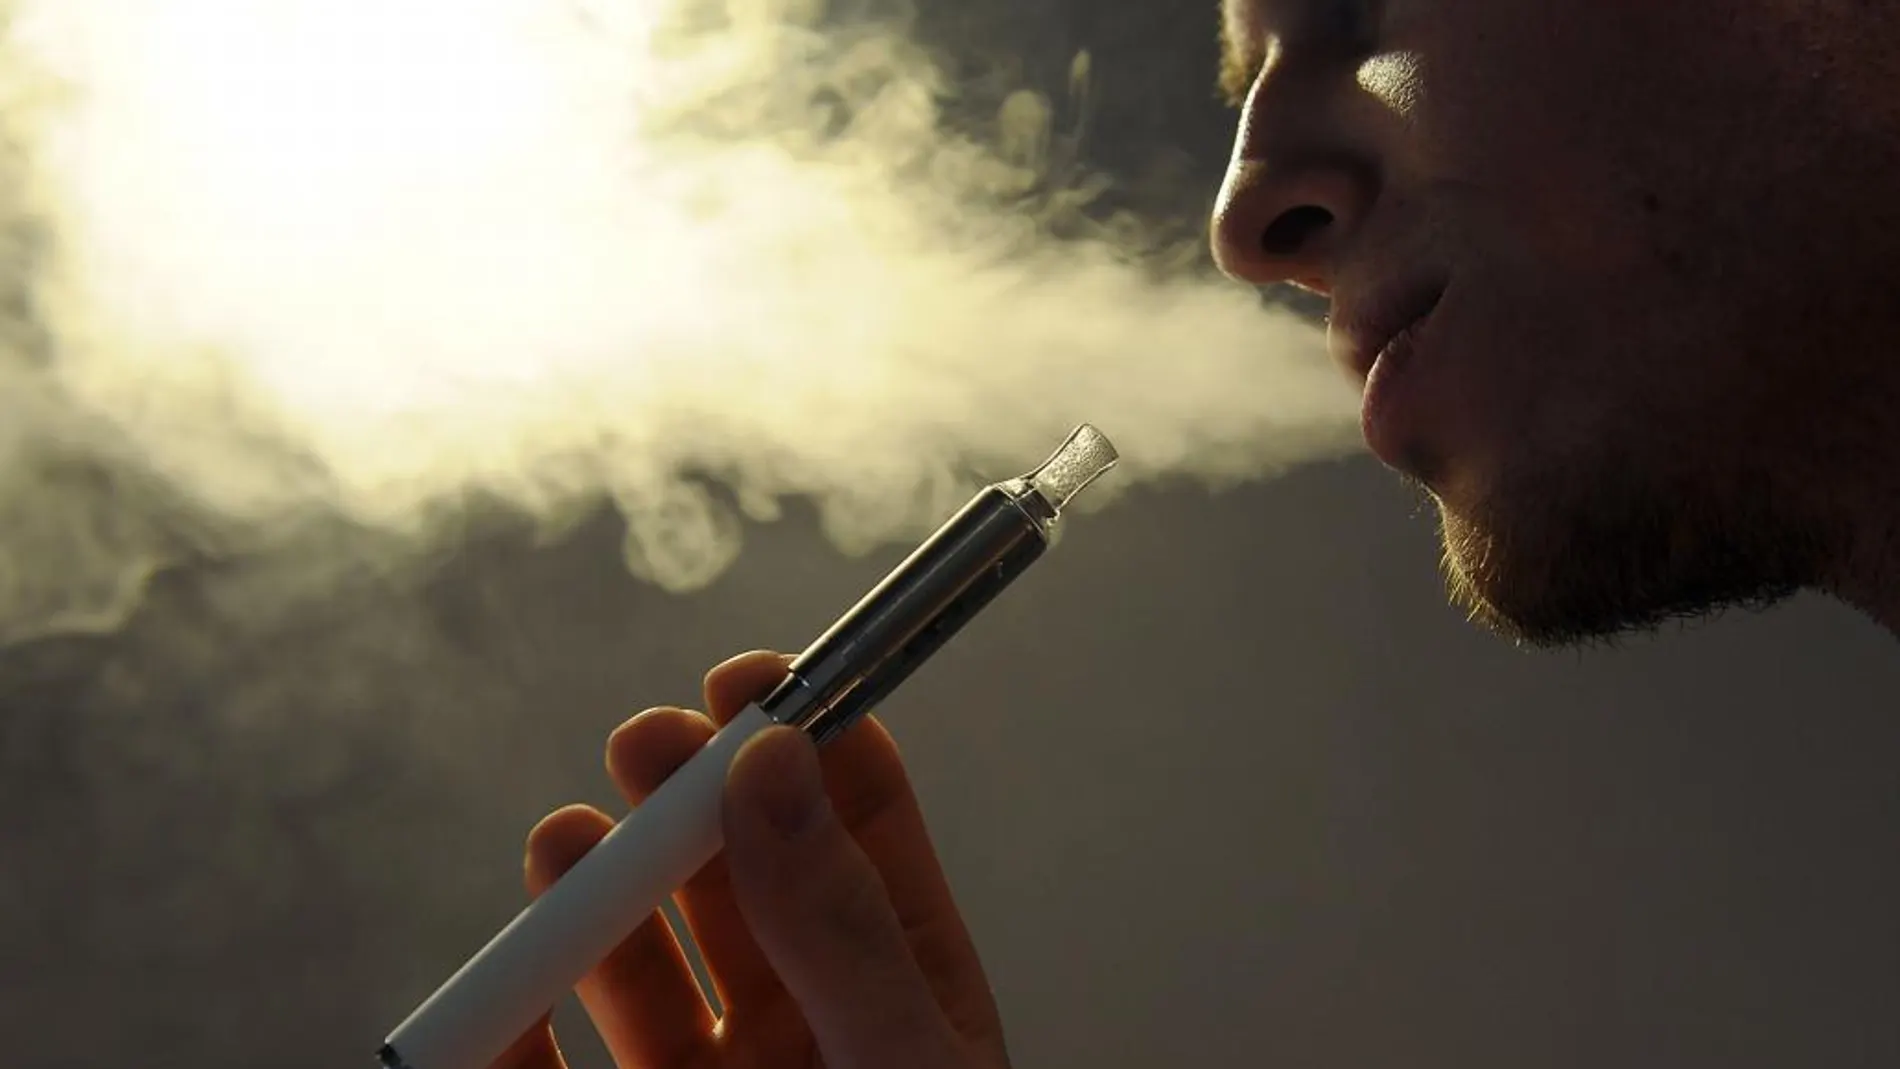 El vapor del cigarrillo electrónico concentra hasta un 700% menos de nicotina, según un estudio